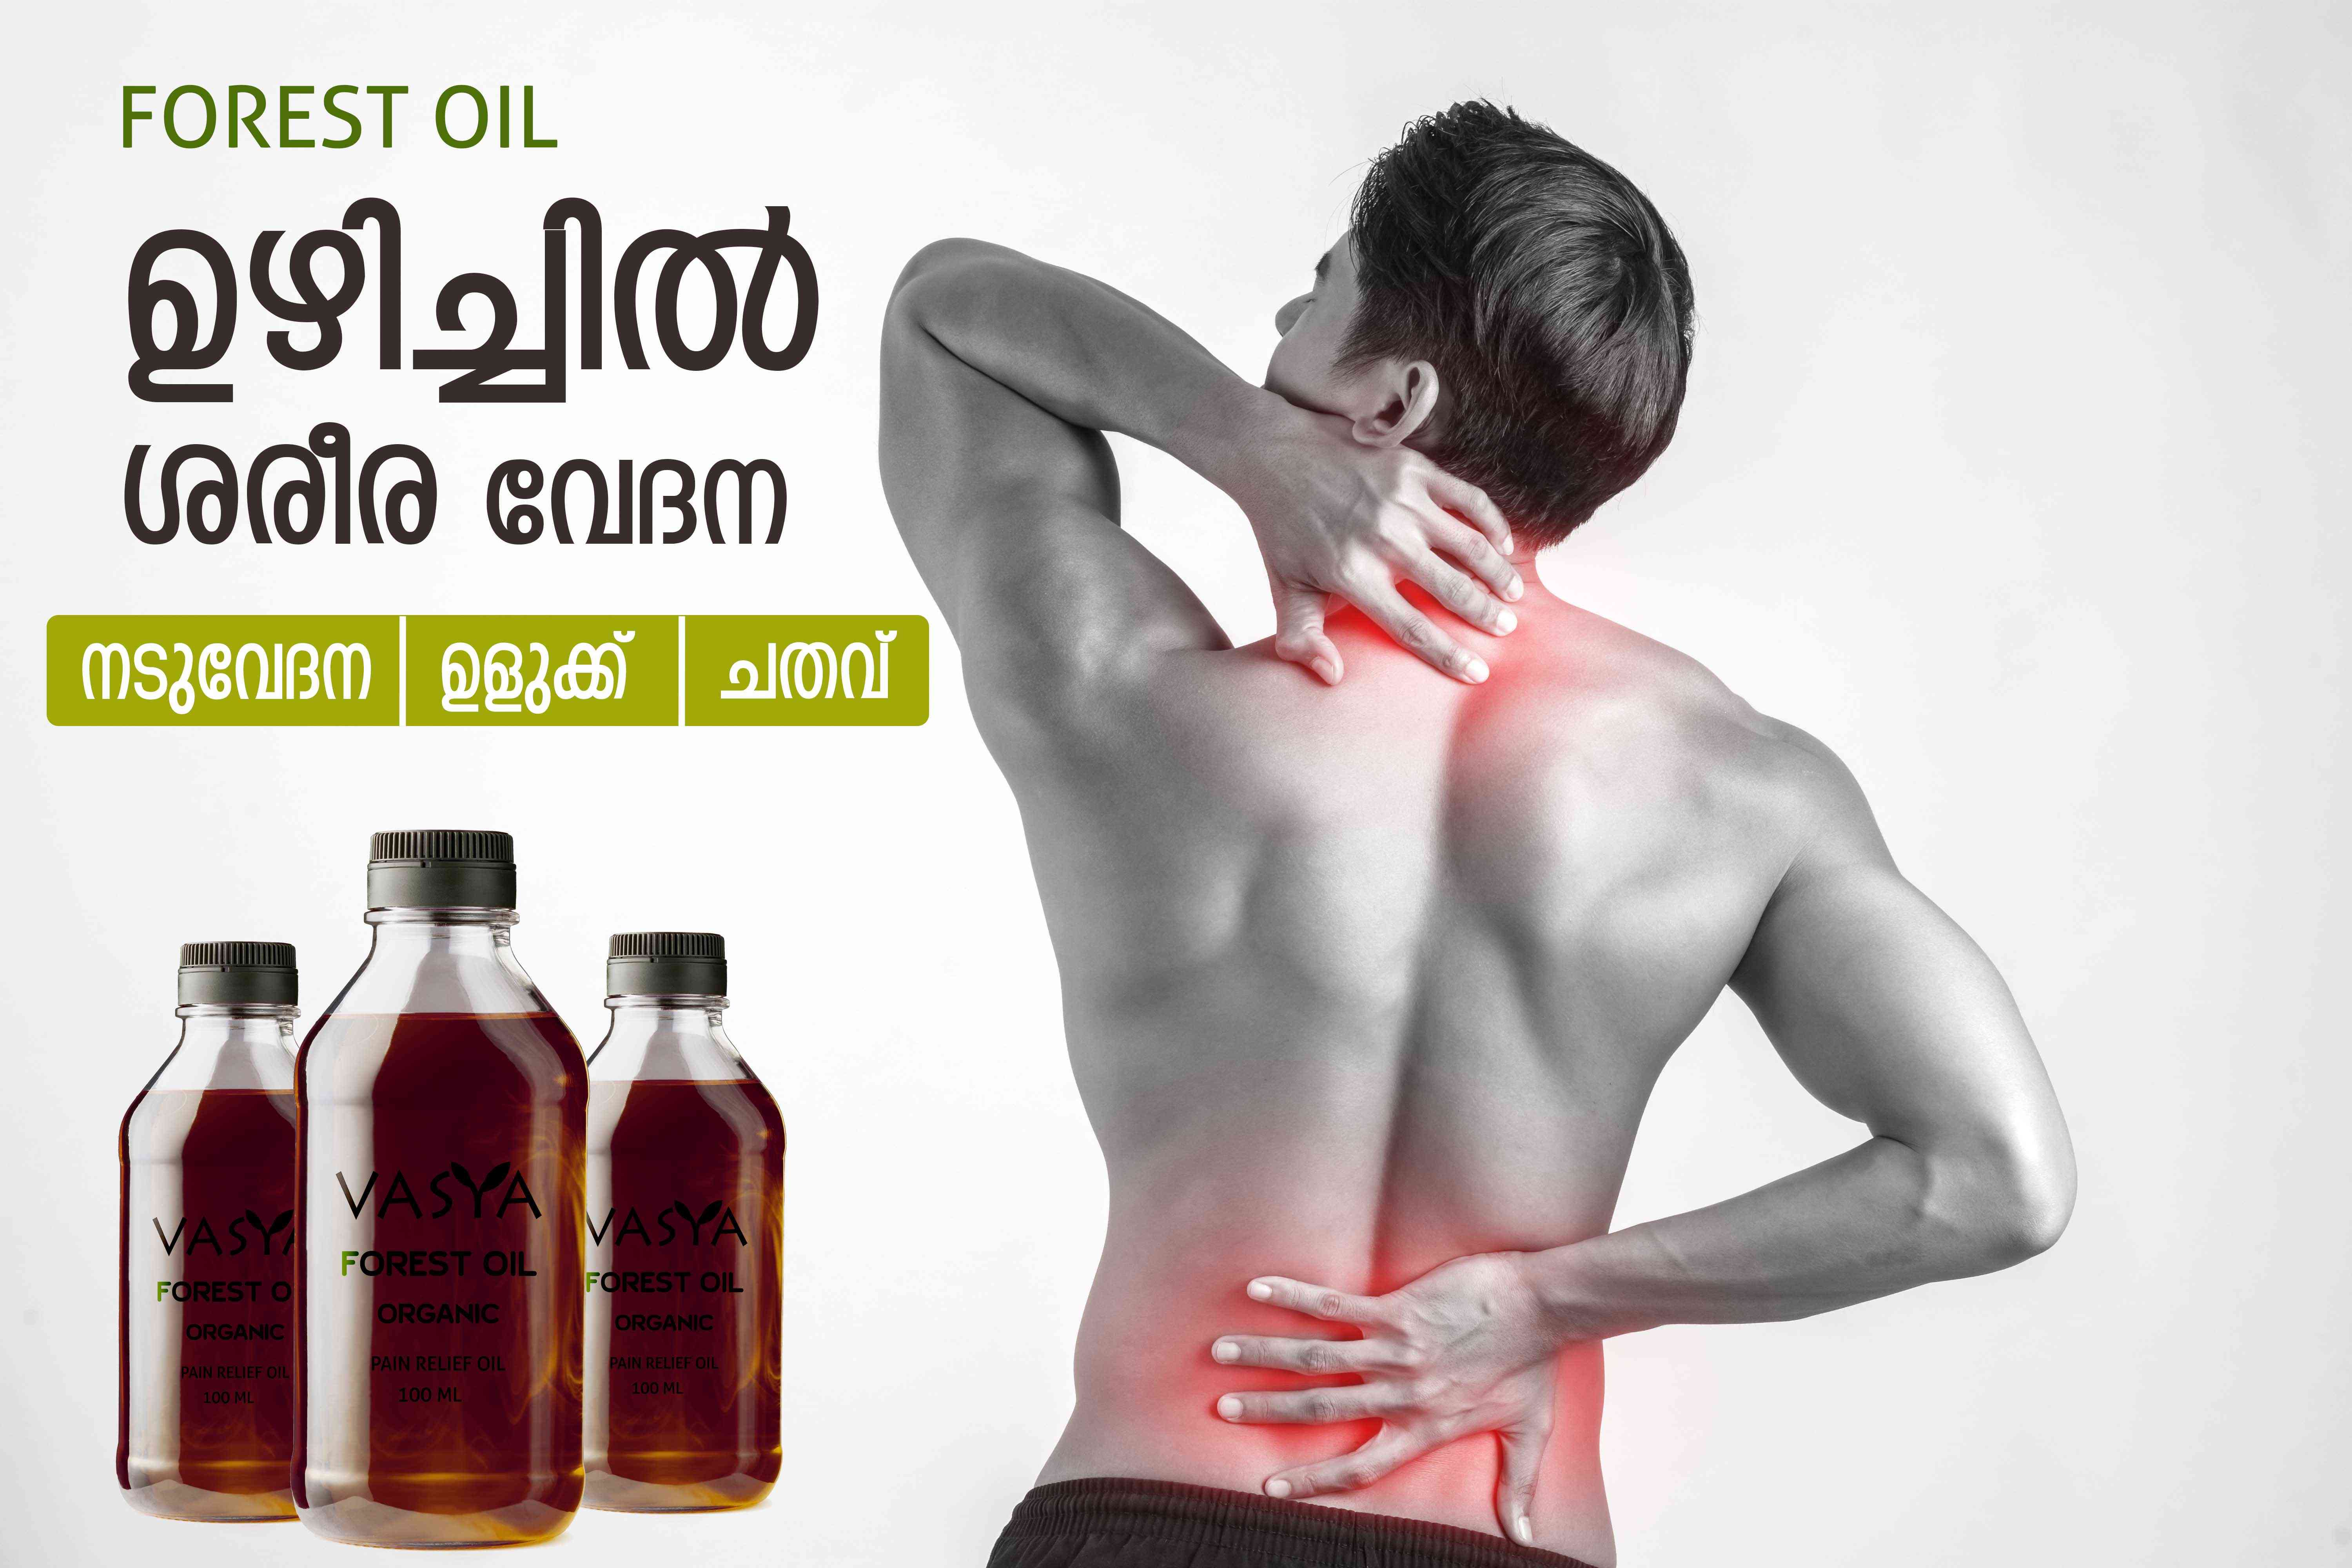 Forest Oil/ Kattu Thailam 100 ml - BEST MASSAGE AND PAIN RELIEF OIL  Wayanad / Vasya Herbals (Forest Oil)